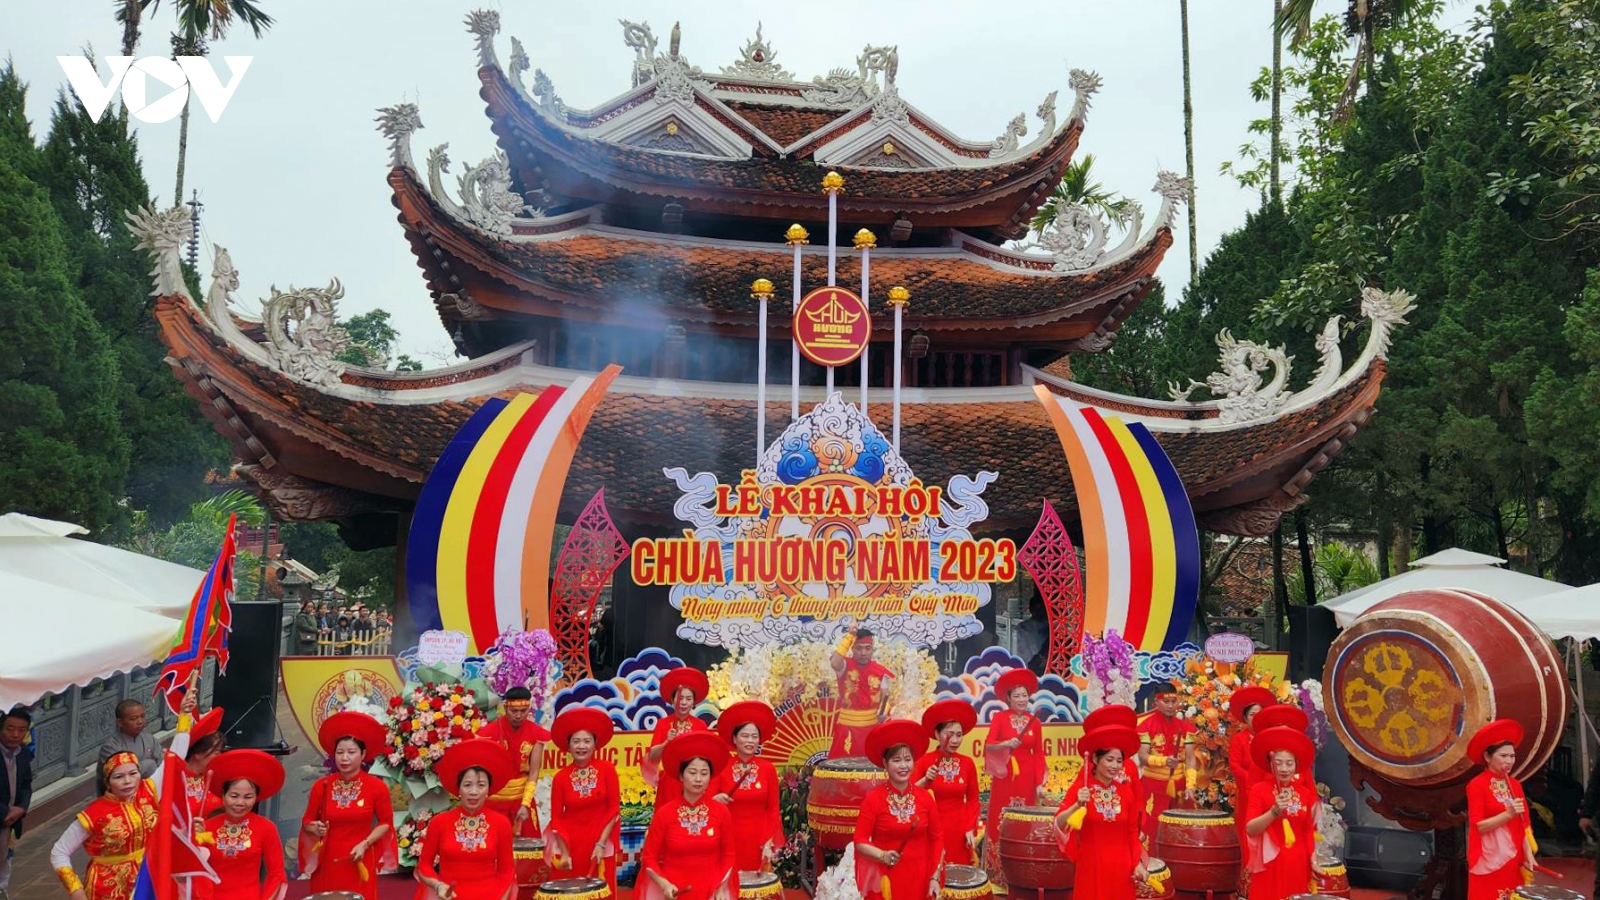 Chính thức khai hội chùa Hương xuân Quý Mão 2023